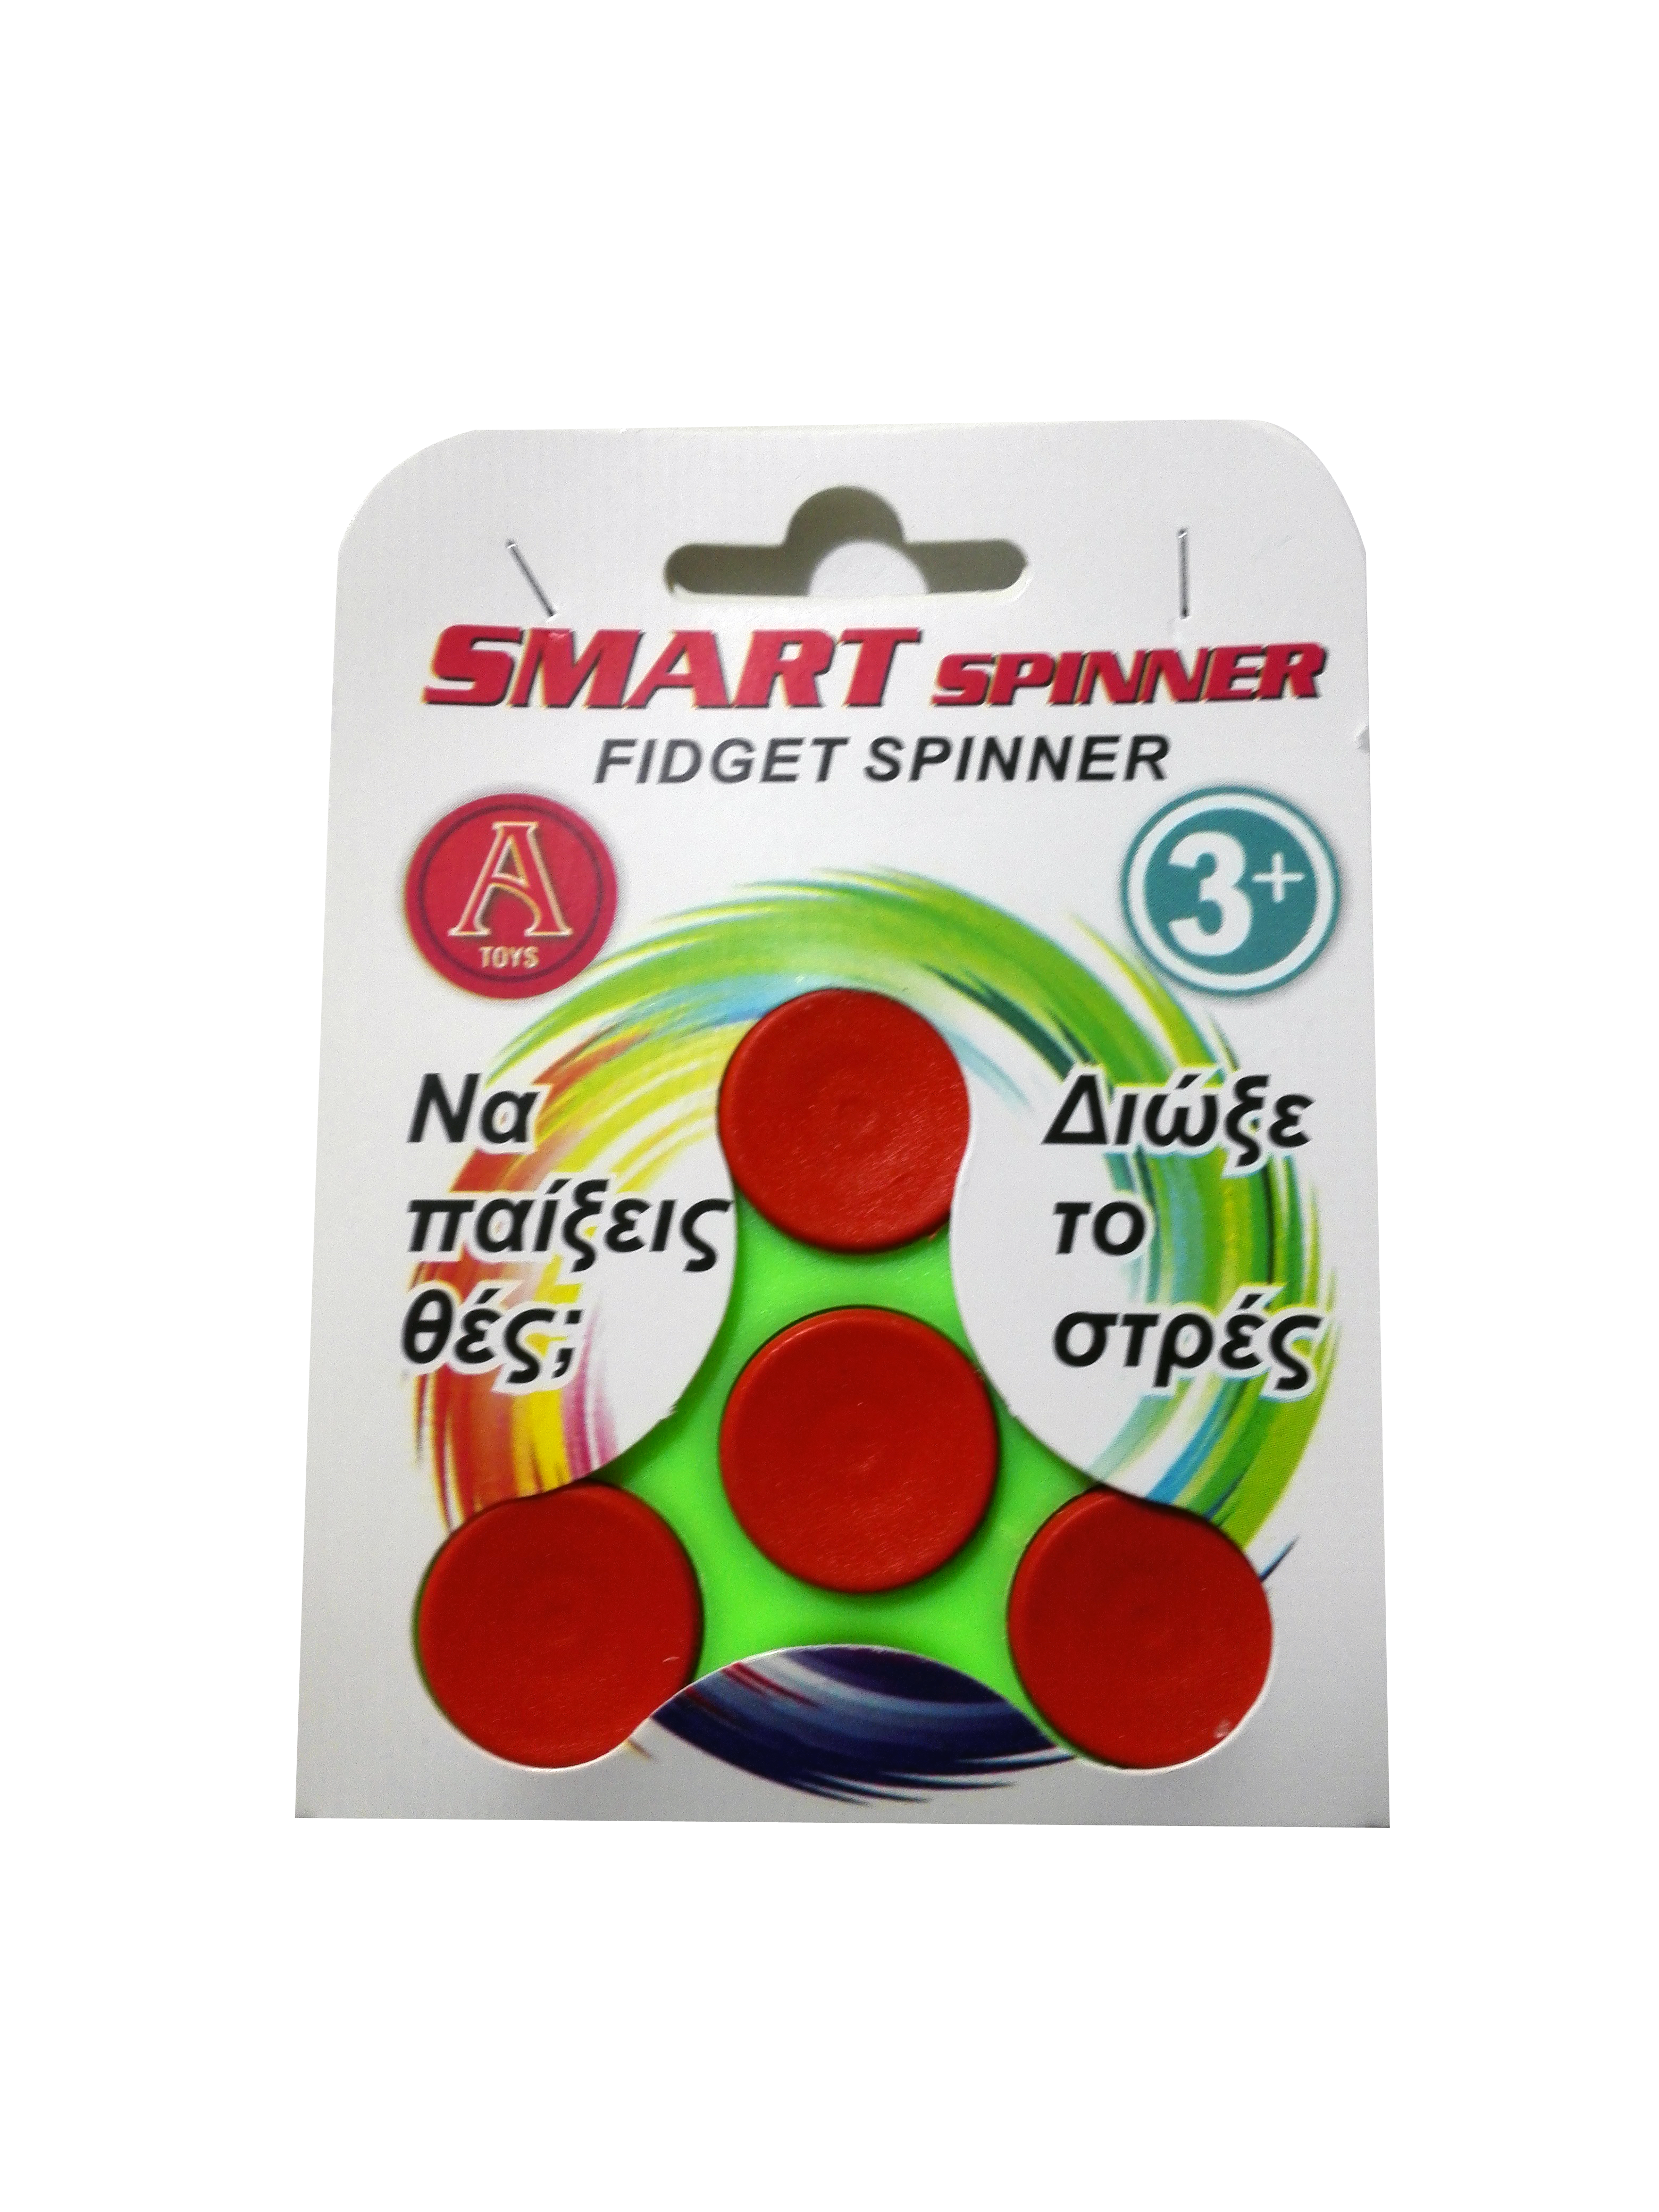 ΚΩΔ: ΣΠ-12
Fidget Spinner
Διάφορα χρώματα